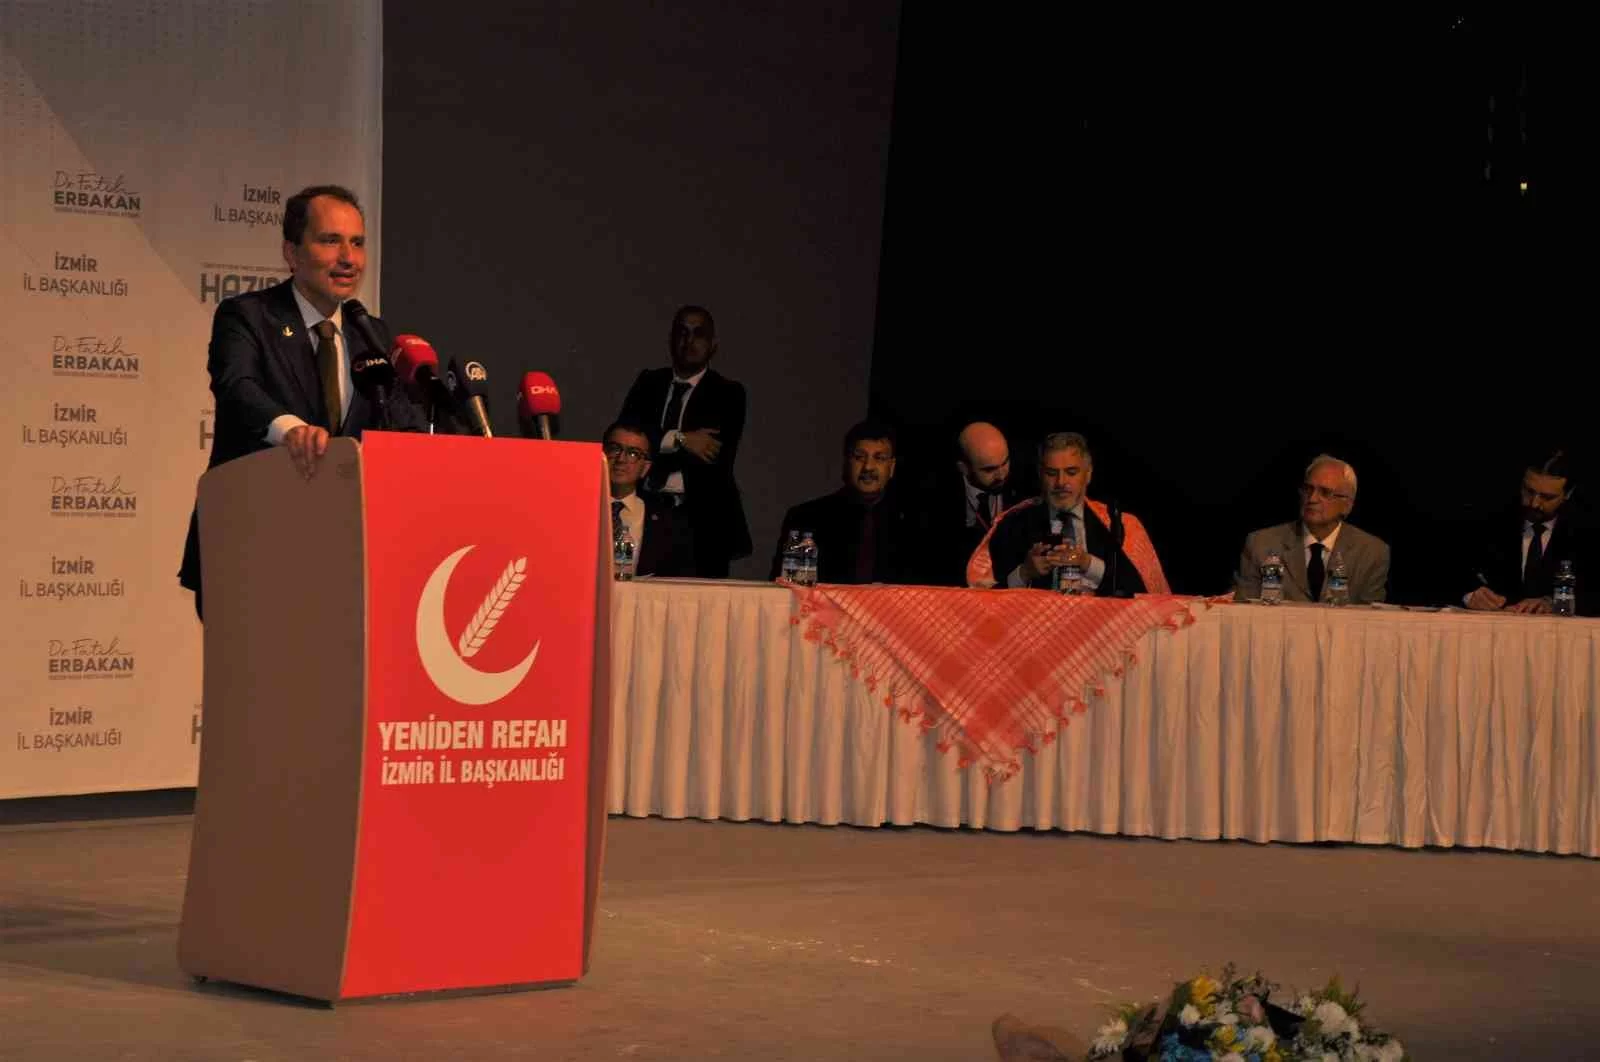 Yeniden Refah Partisinin 2. olağan kongresi İzmirde gerçekleştirildi